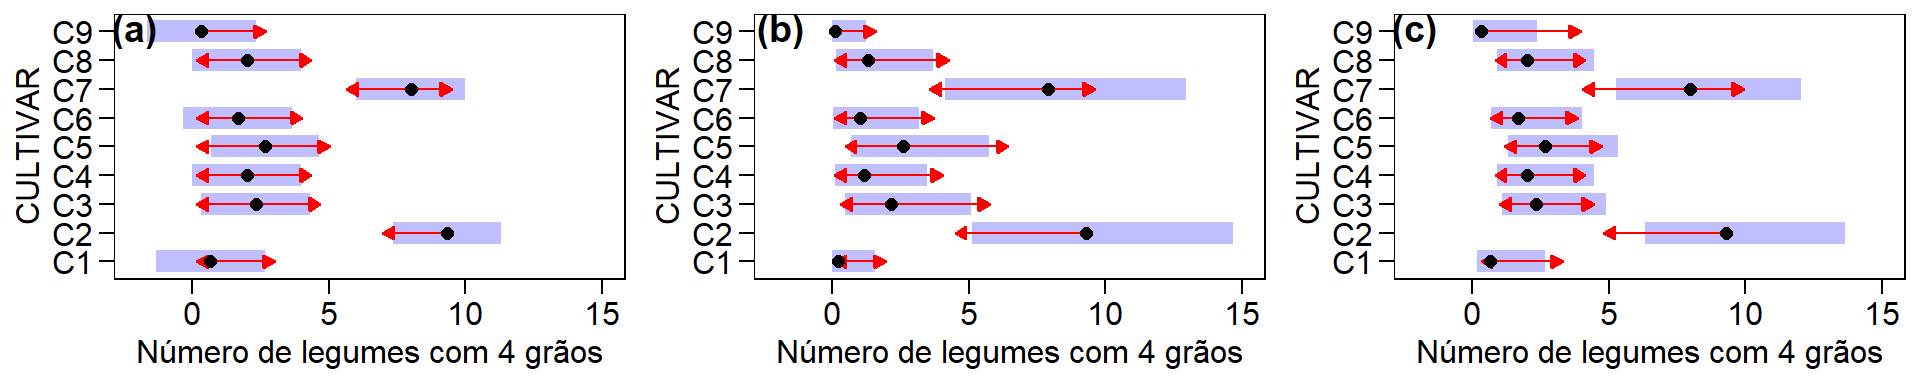 Médias estimadas, intervalos de confiança e comparação de médias para os modelos da ANOVA tradicional (a), com dados transformados (b) e generalizado (c) para o número de legumes com 4 grãos.